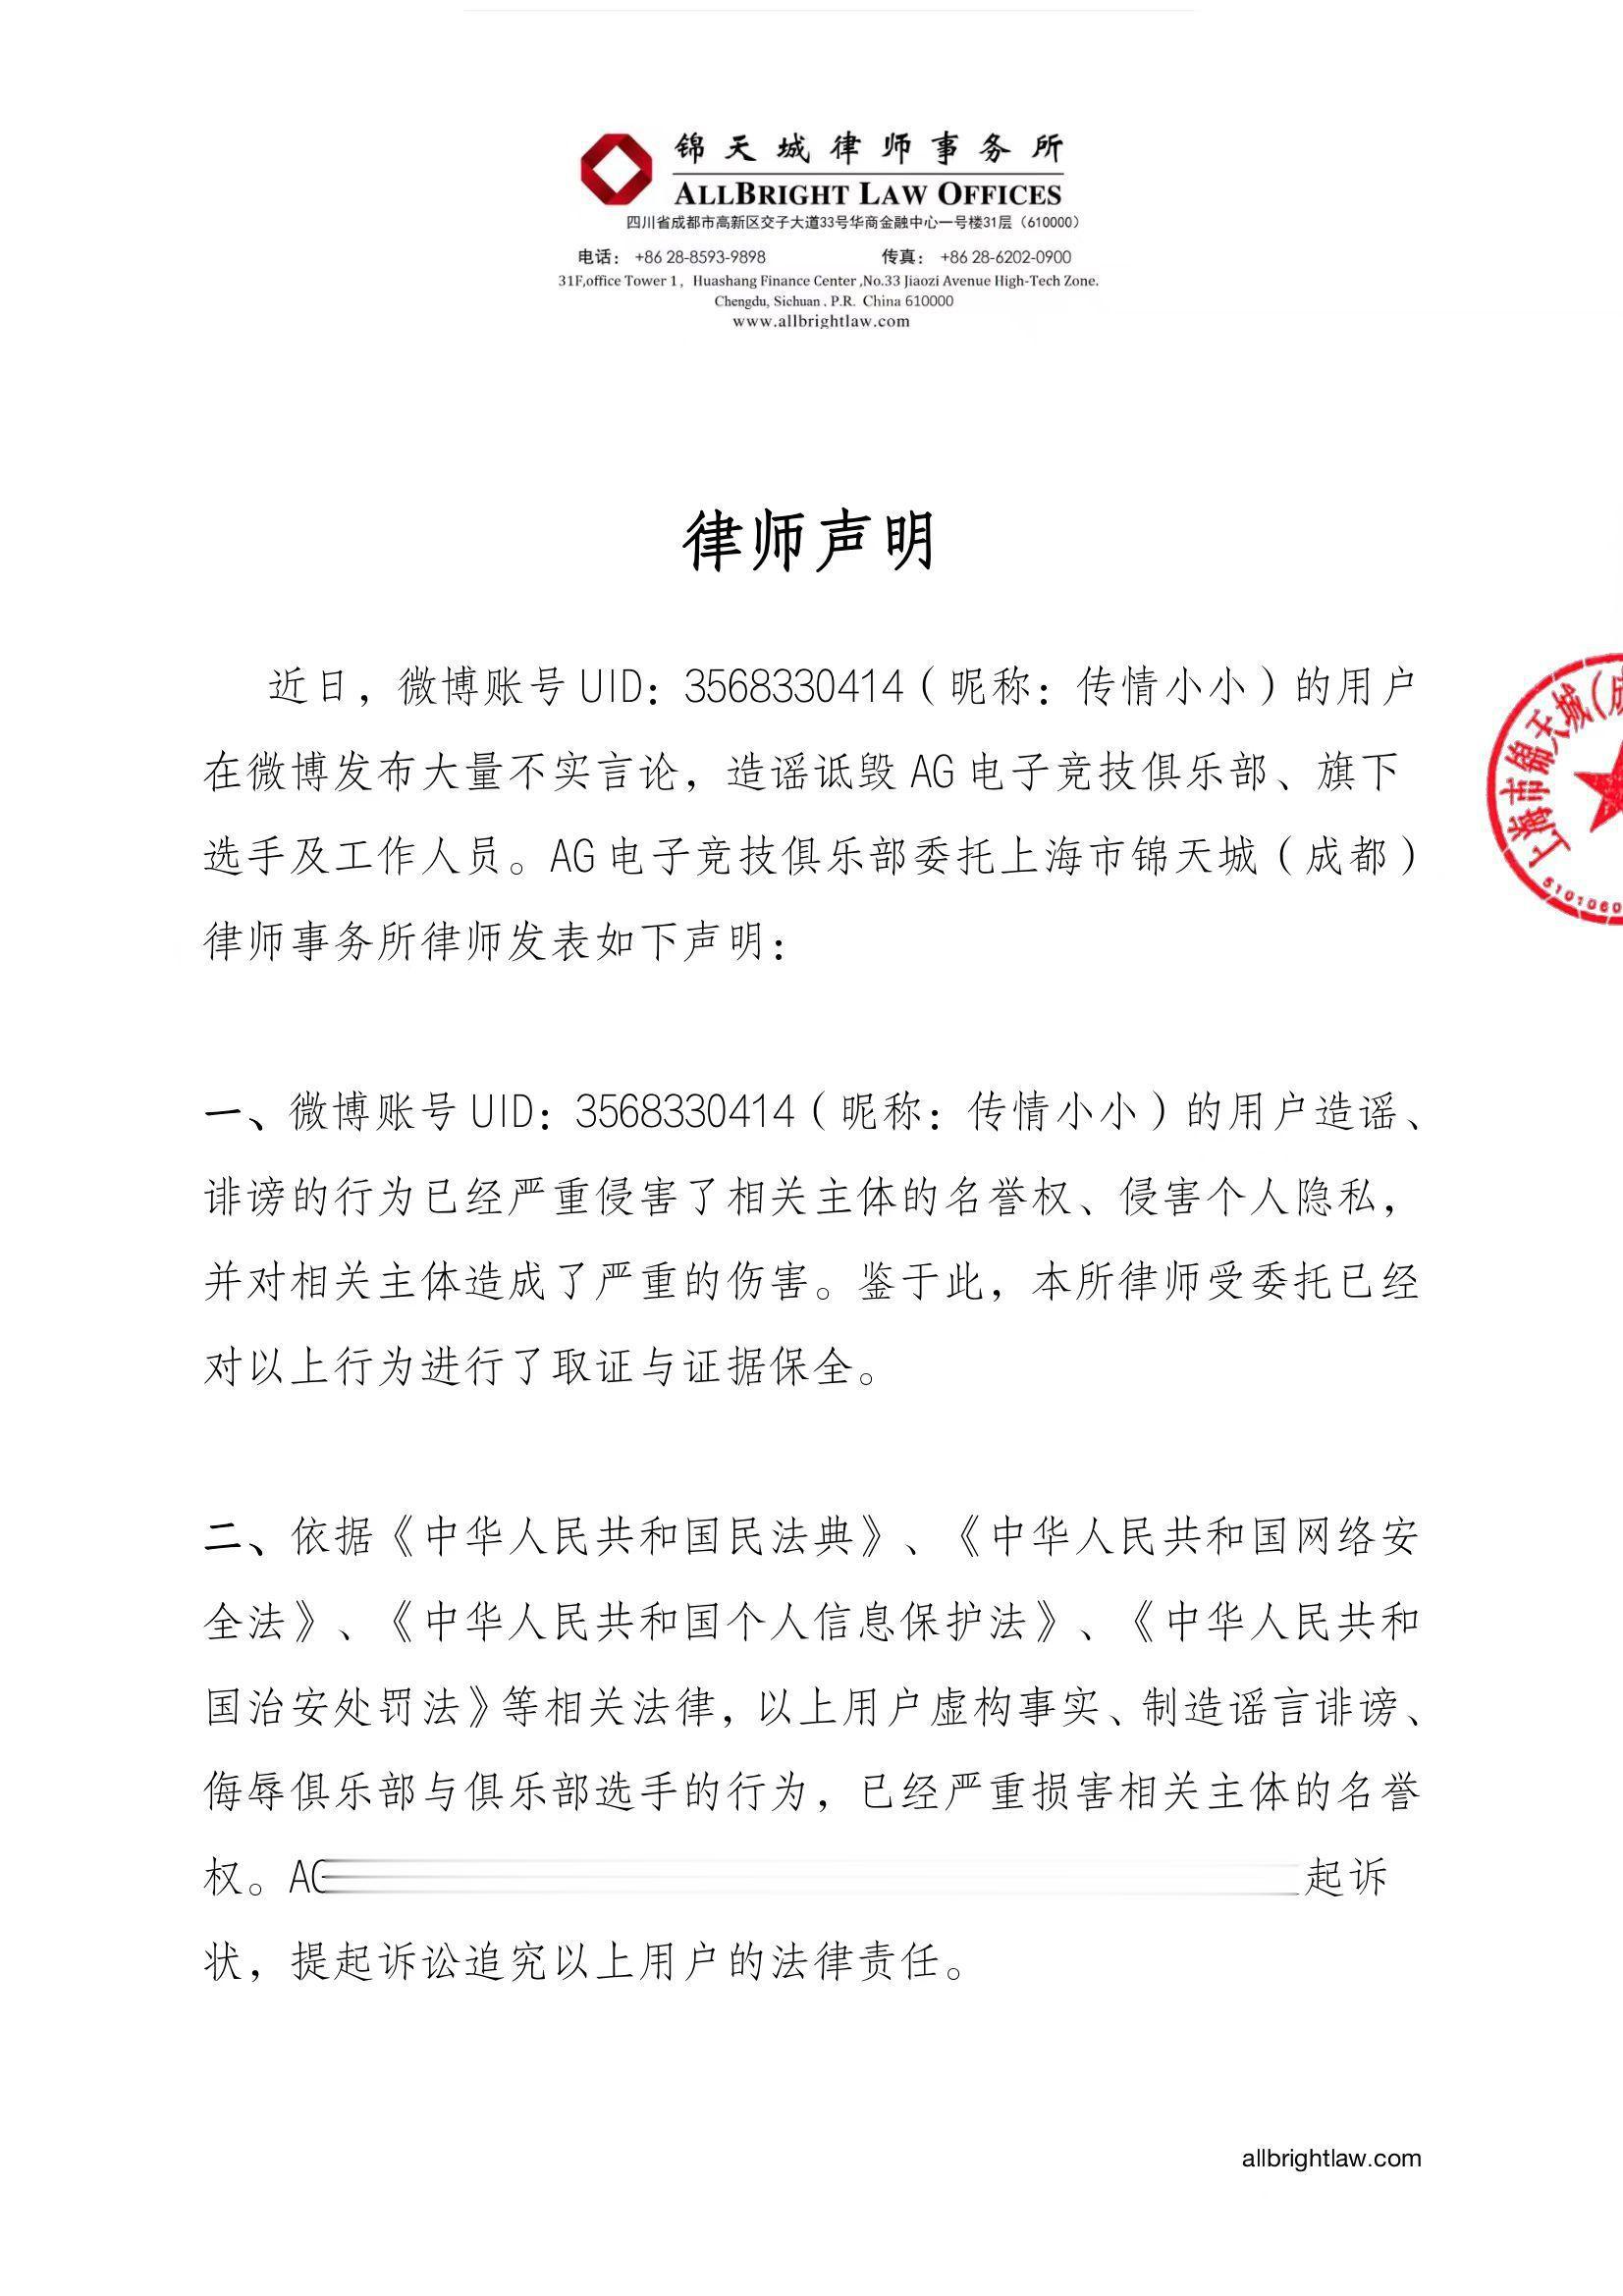 成都AG俱乐部发布律师声明：立即停止侵害AG俱乐部与选手名誉的行为(1)